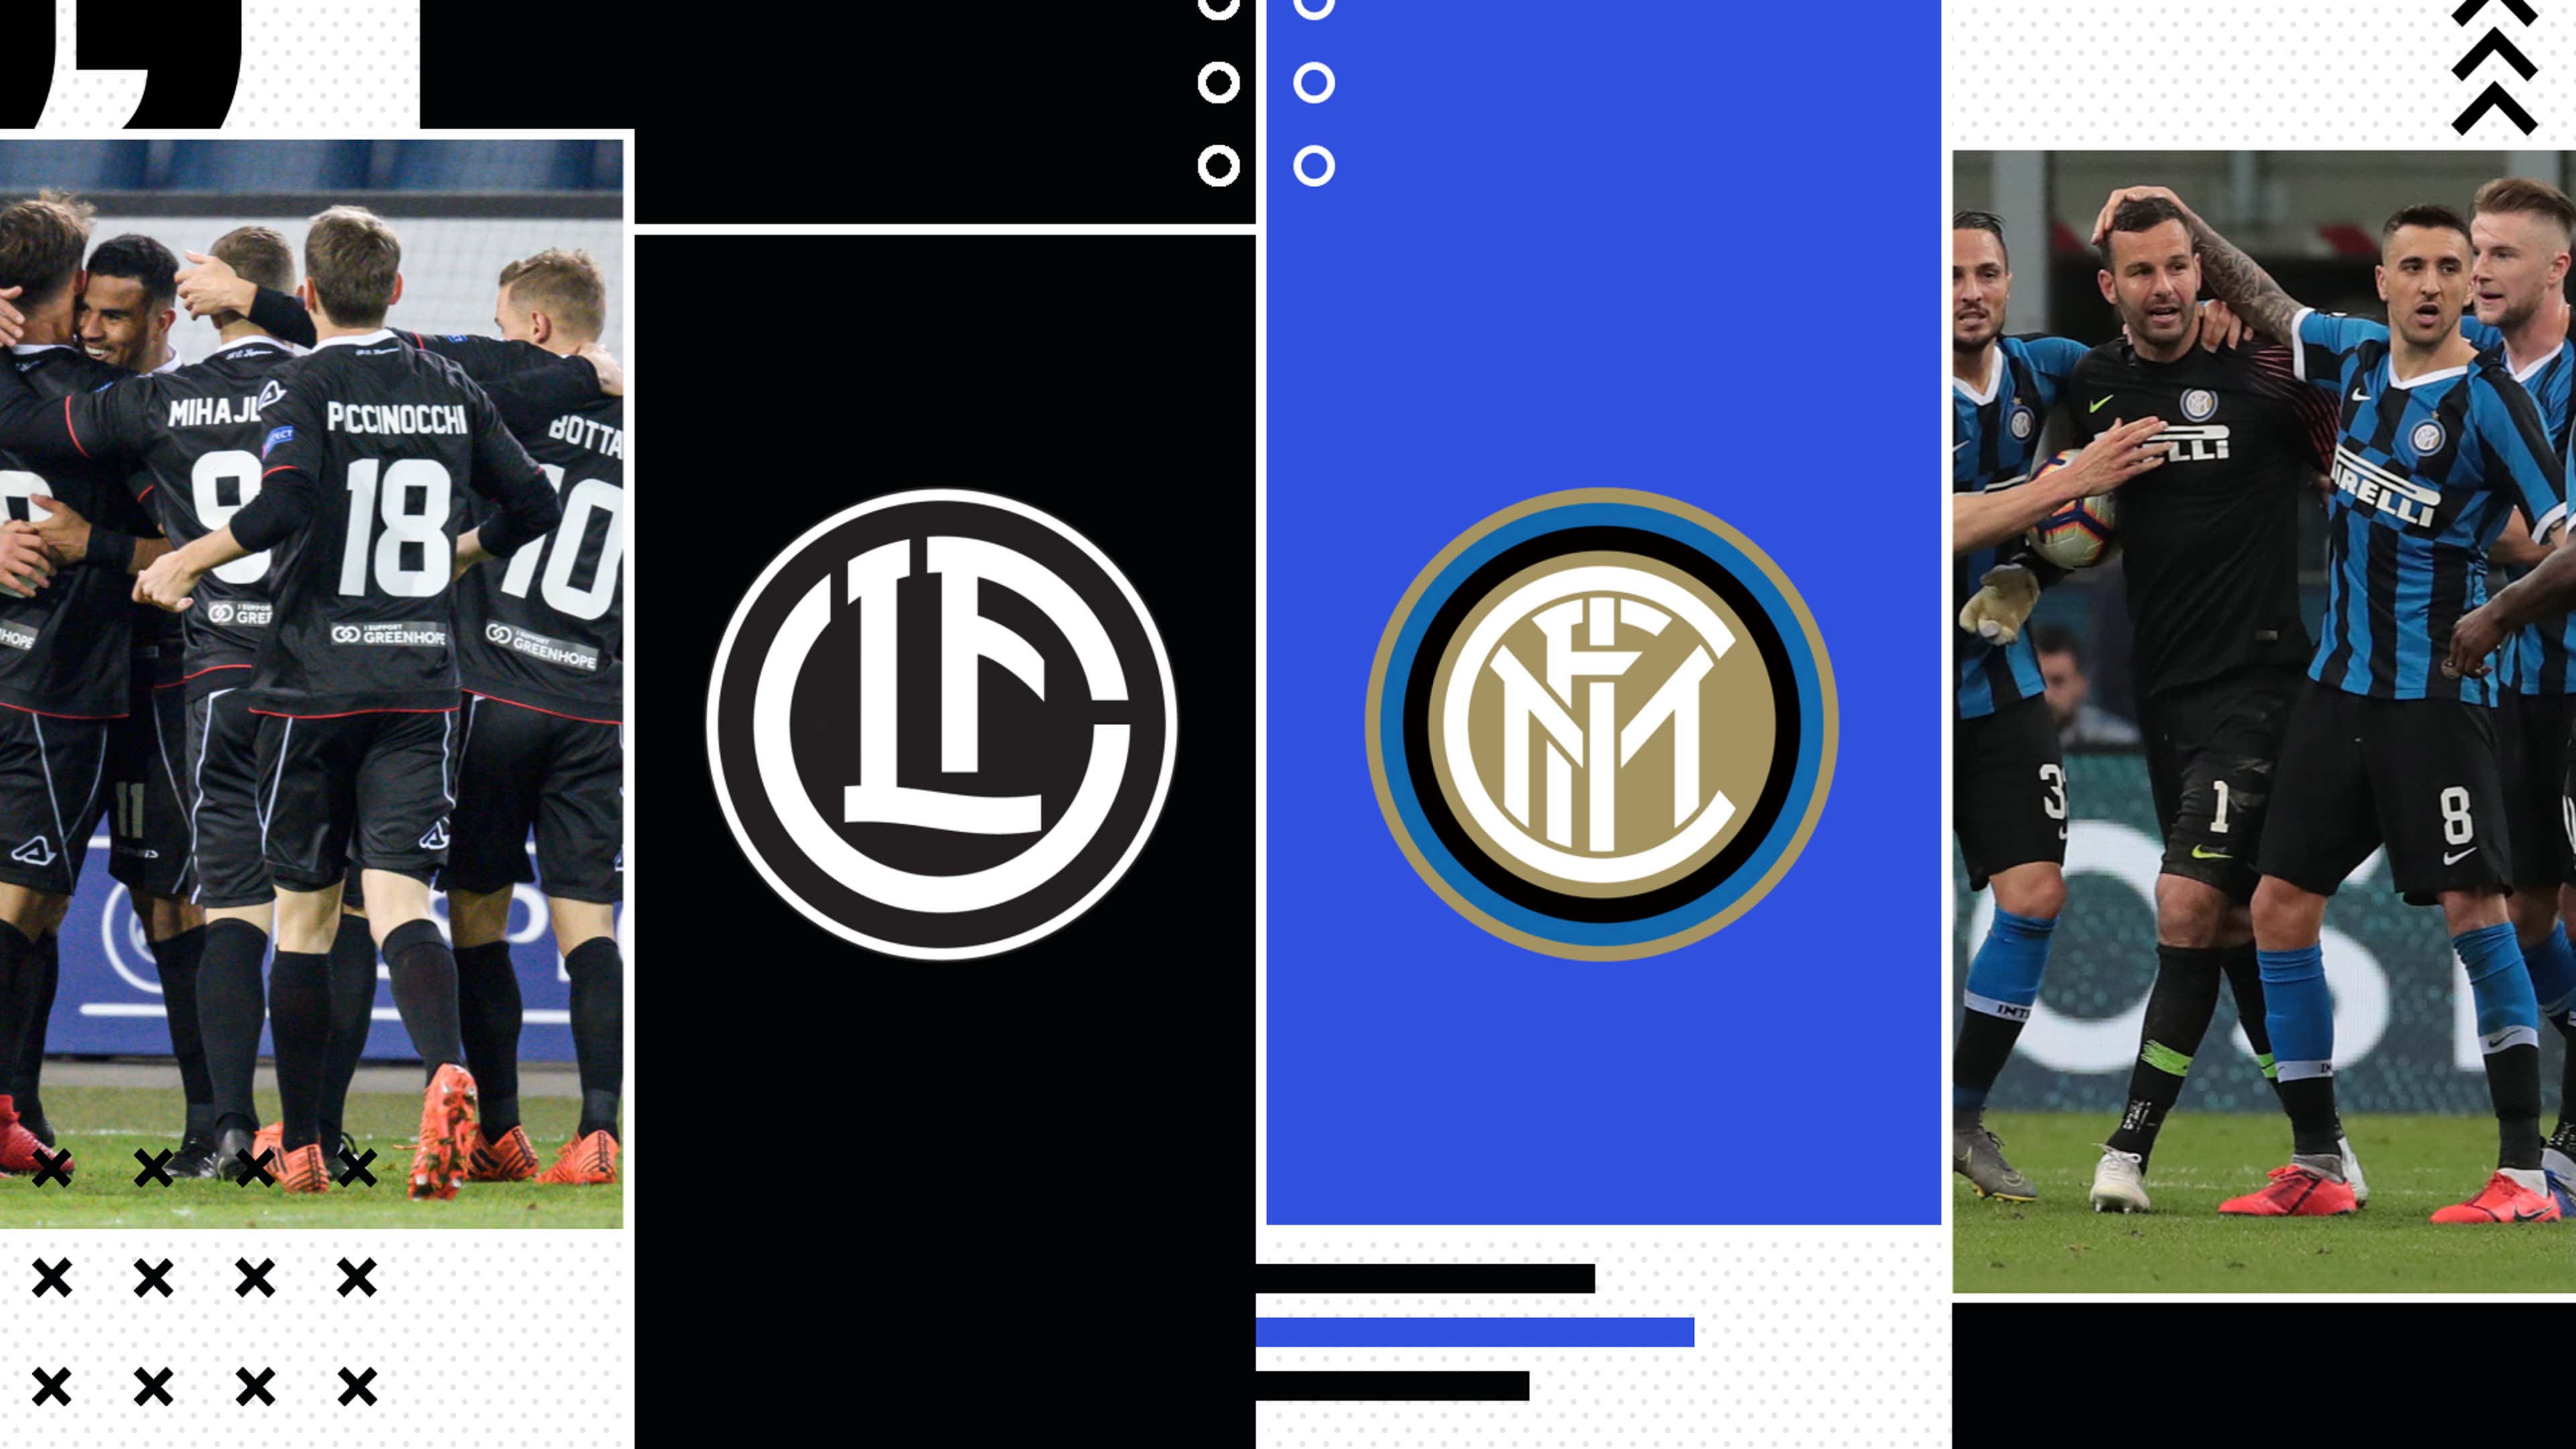 LIVE Inter-Lugano in diretta: formazioni e gol